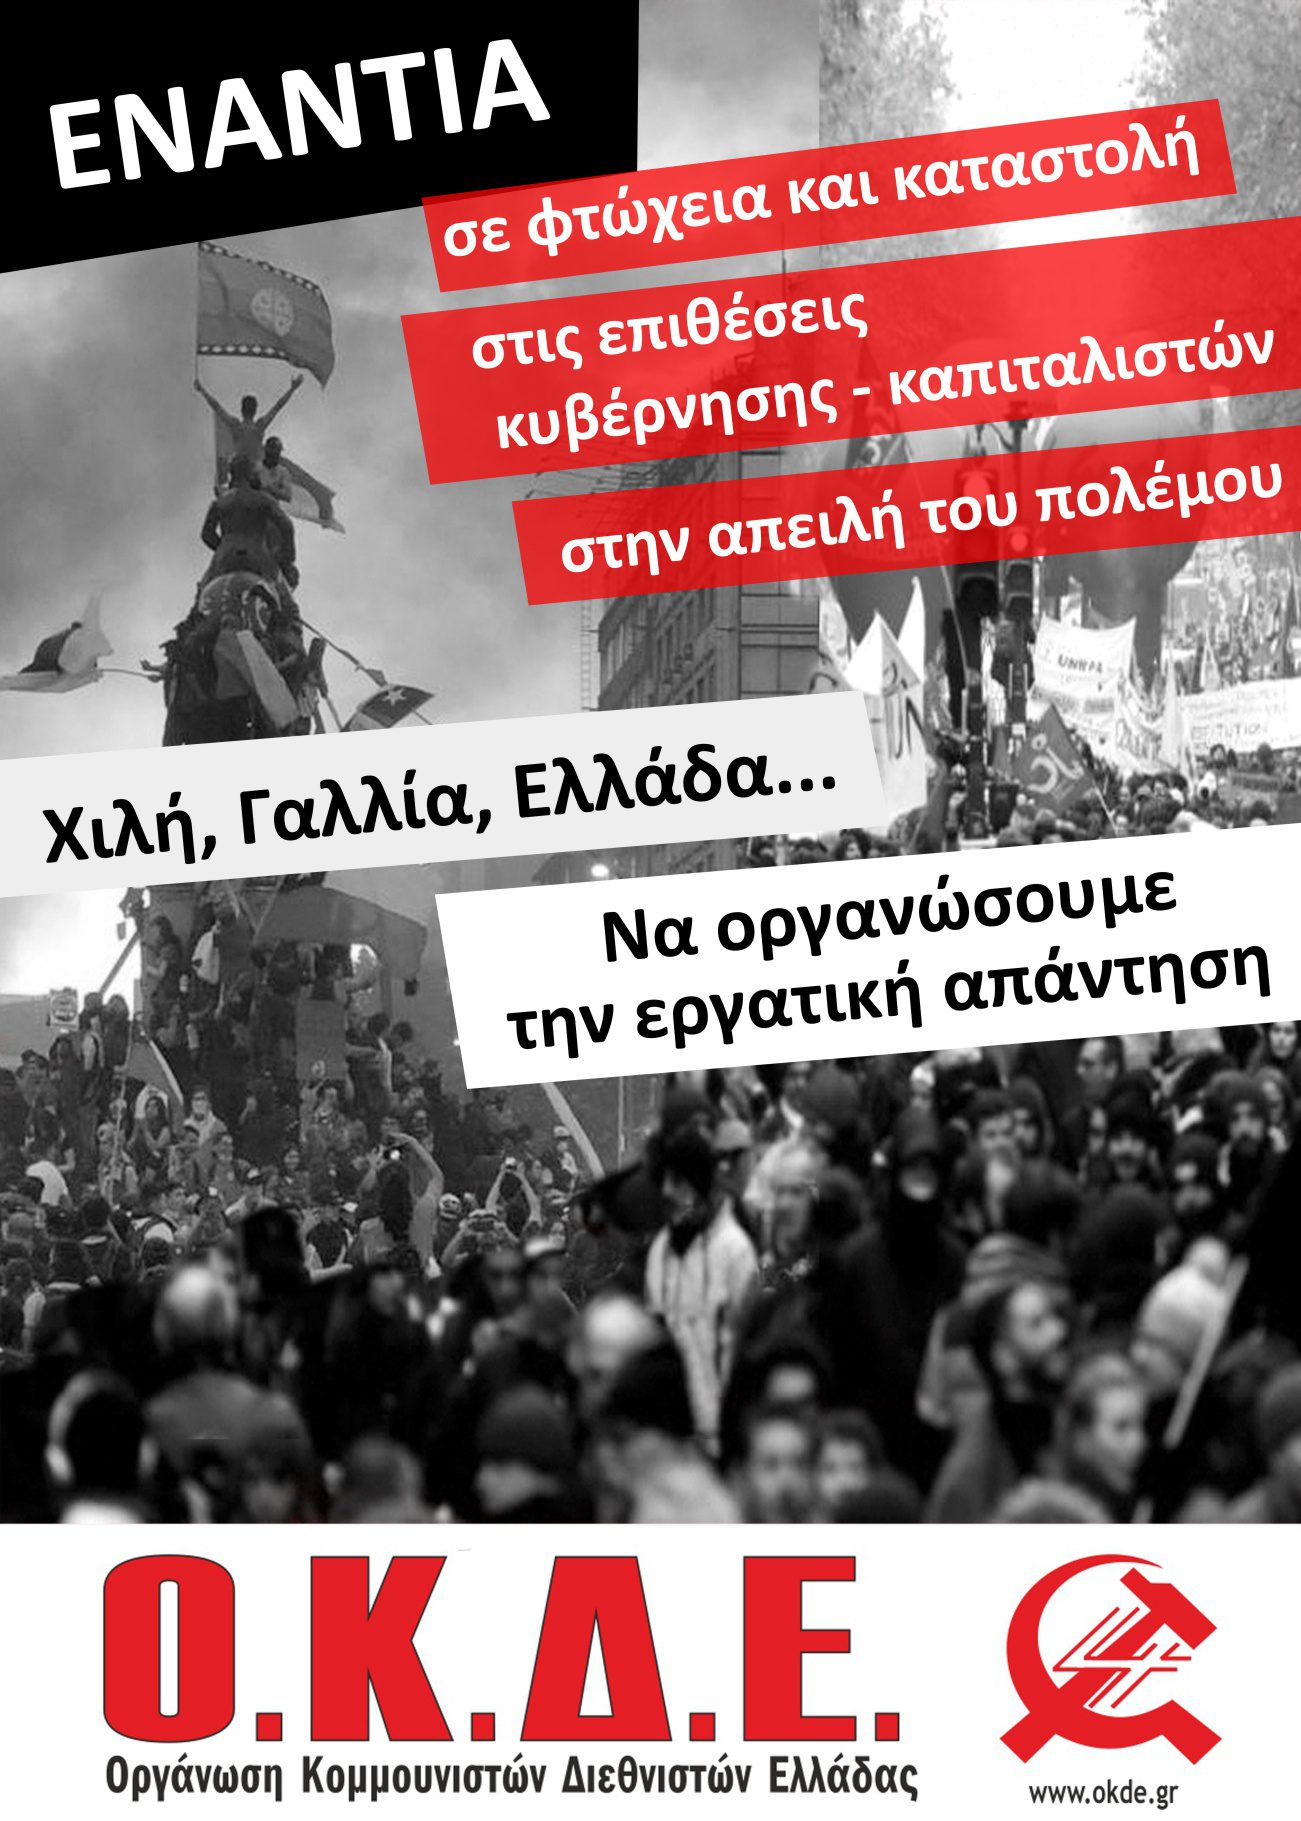 Εκδήλωση – Συζήτηση της ΟΚΔΕ στη Θεσσαλονίκη Σάββατο 1/2. Μεγάλοι αγώνες και εξεγέρσεις σε όλη την υφήλιο, να οργανώσουμε την εργατική απάντηση